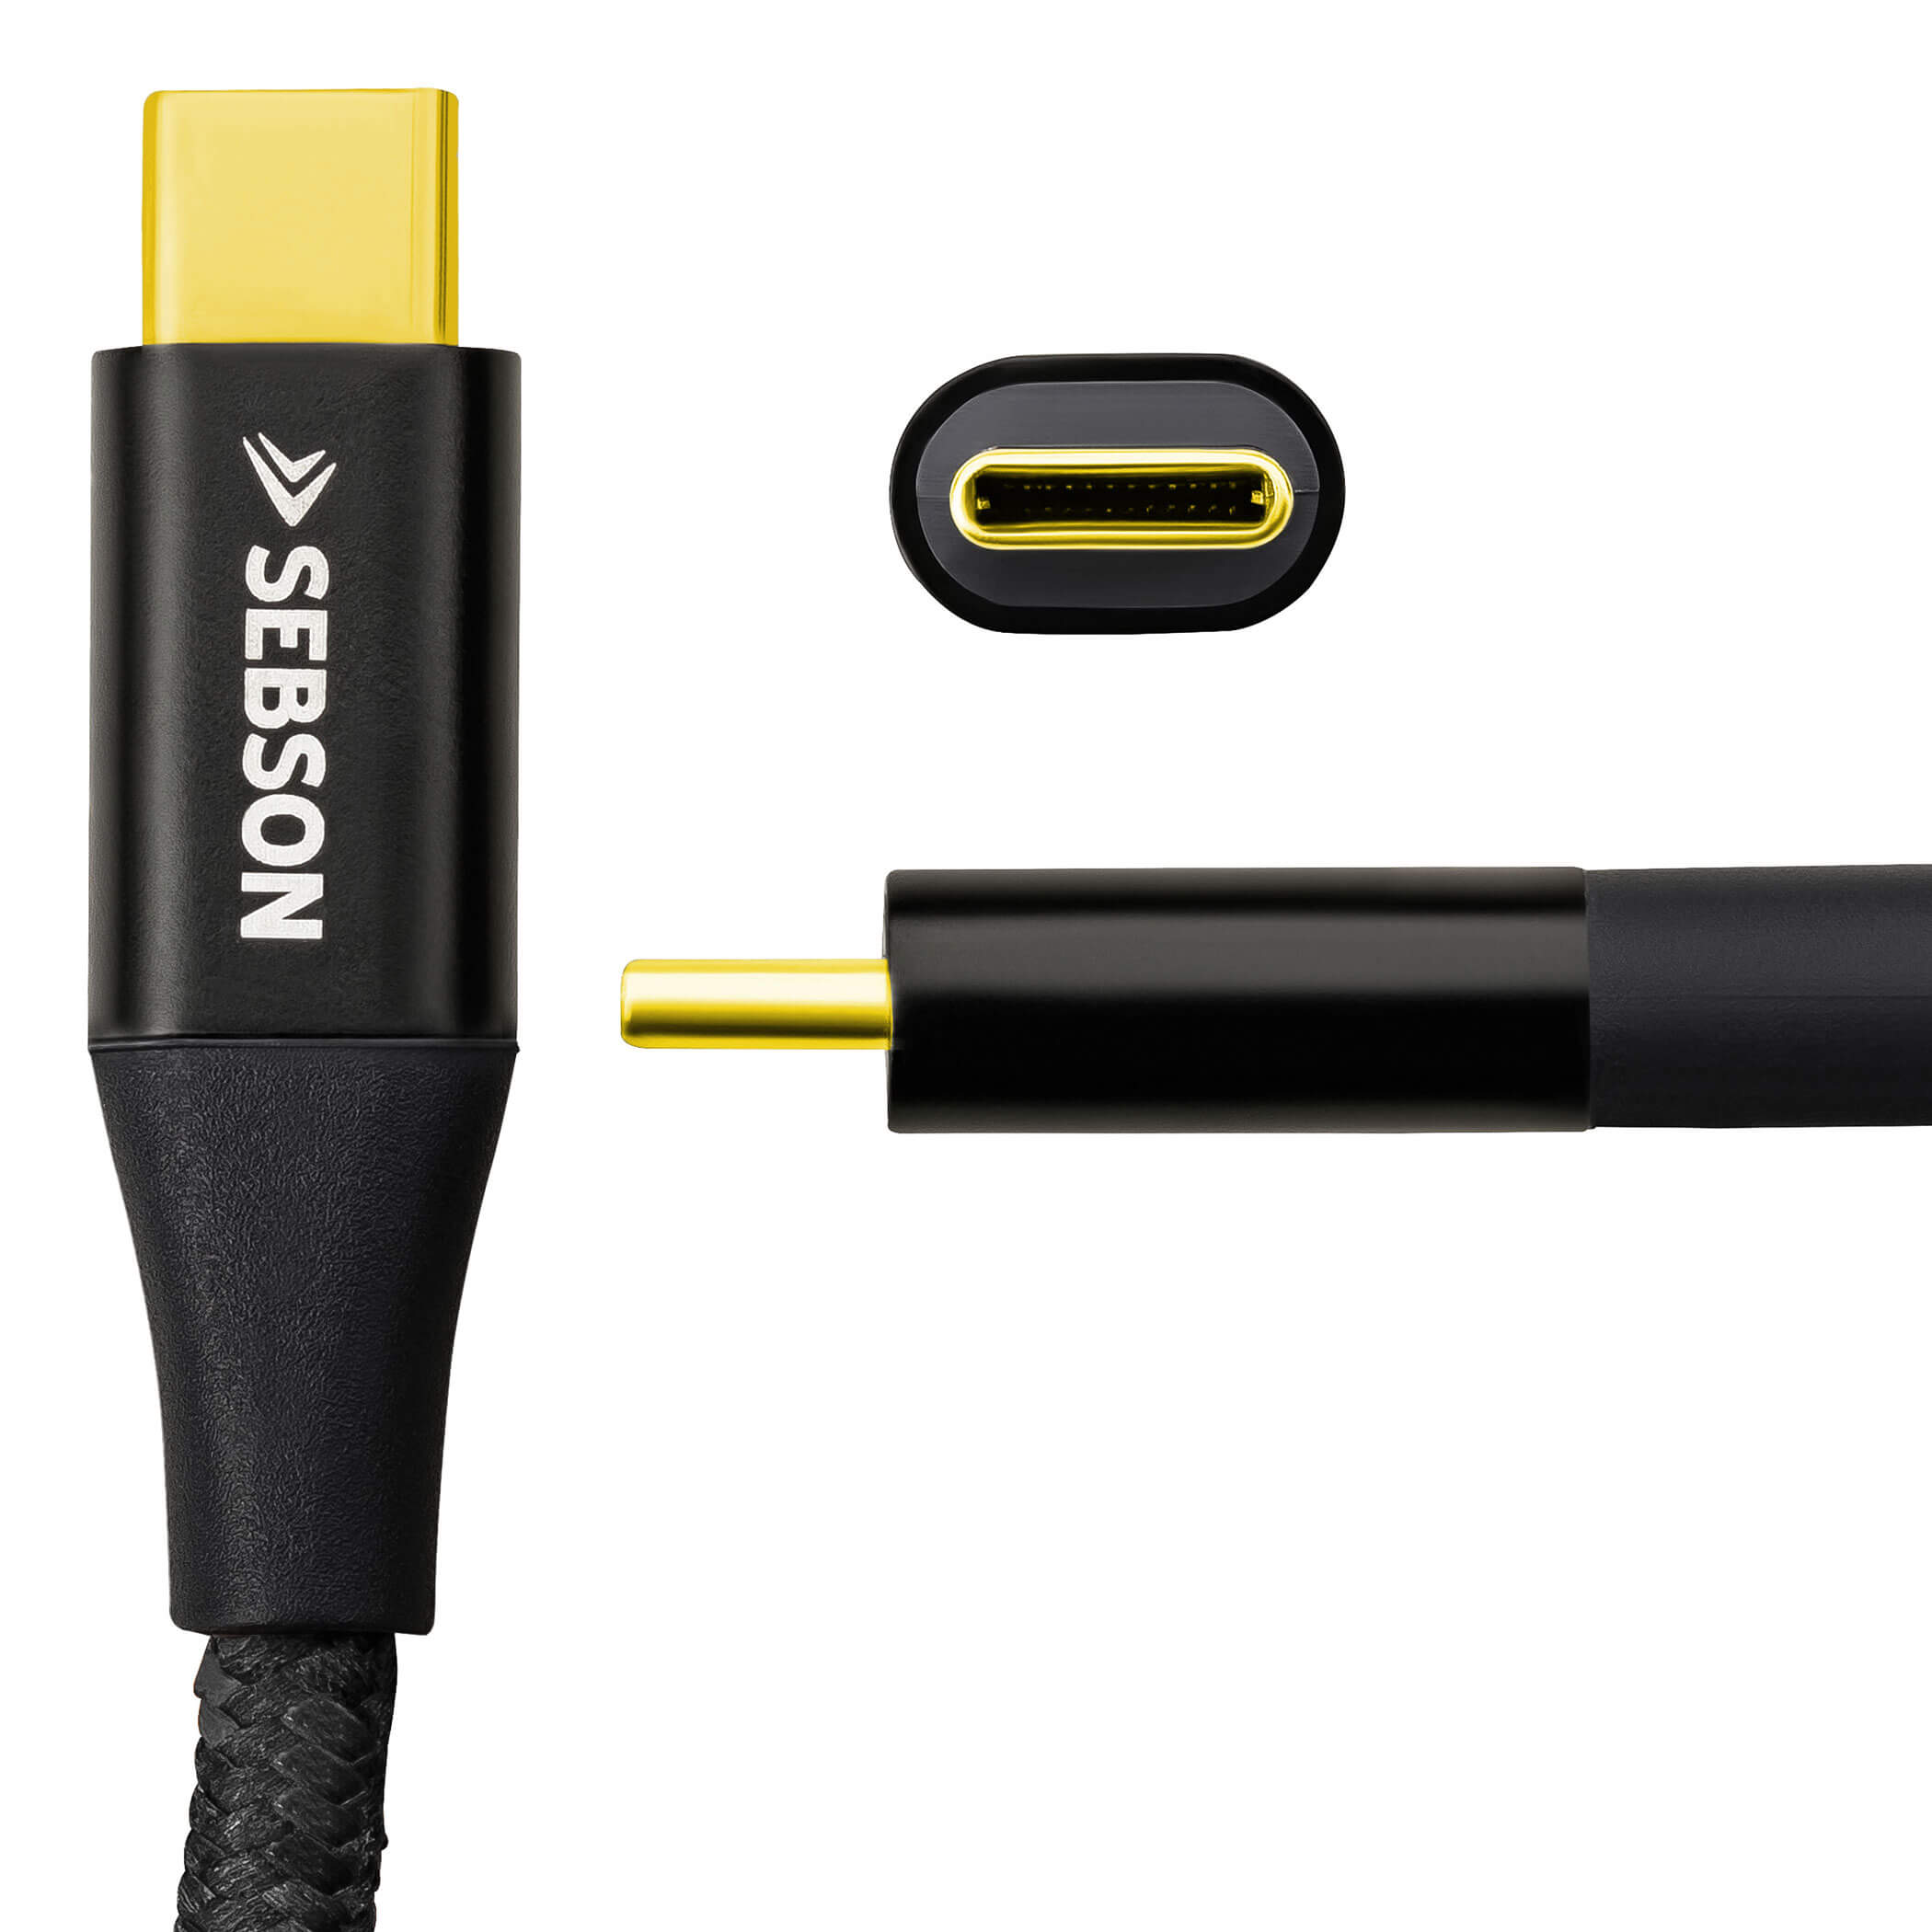 USB3_CG2_1M_A SEBSON USB Kabel